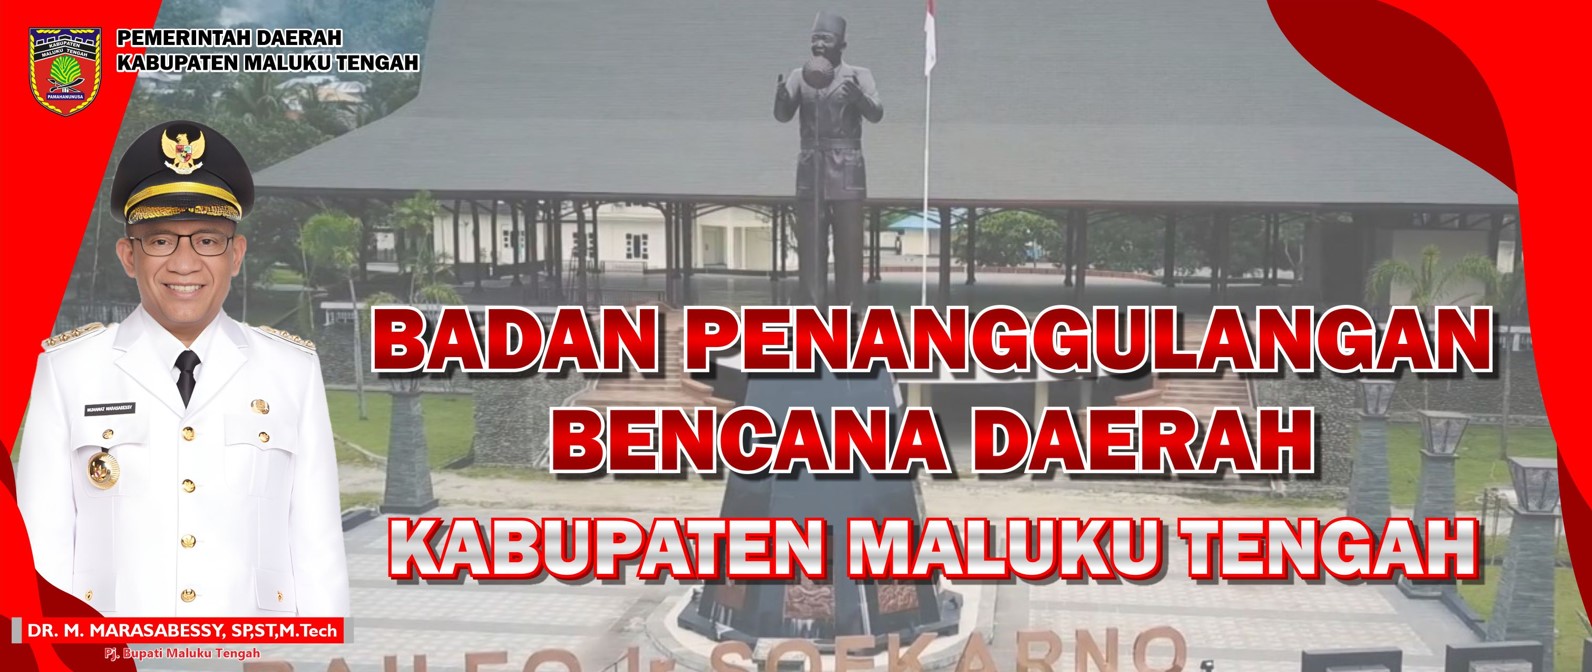 Kepala Daerah Kabupaten Maluku Tengah